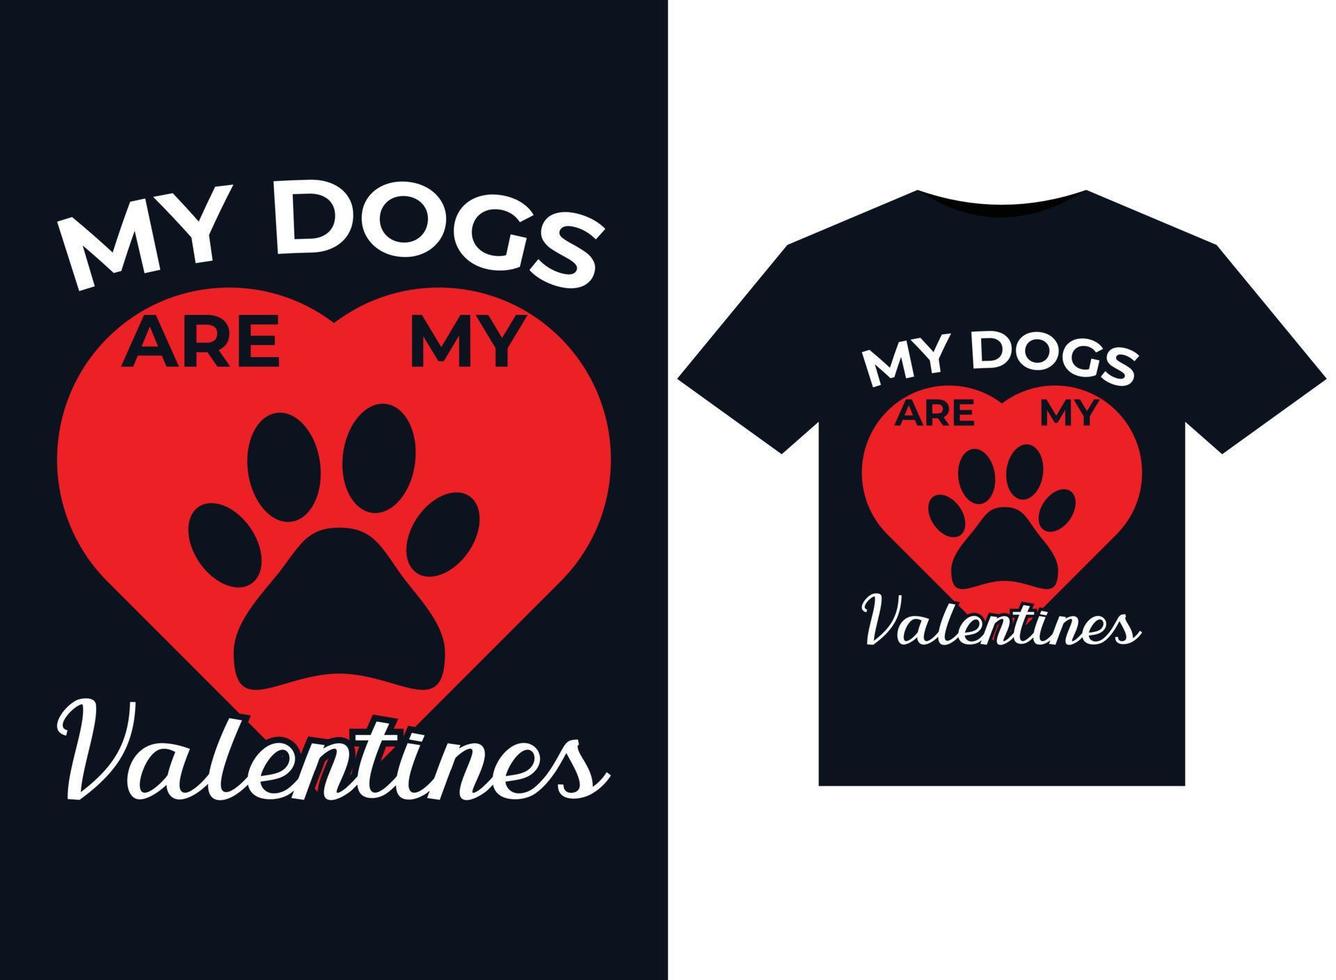 meus cachorros são minhas ilustrações de dia dos namorados para design de camisetas prontas para impressão vetor